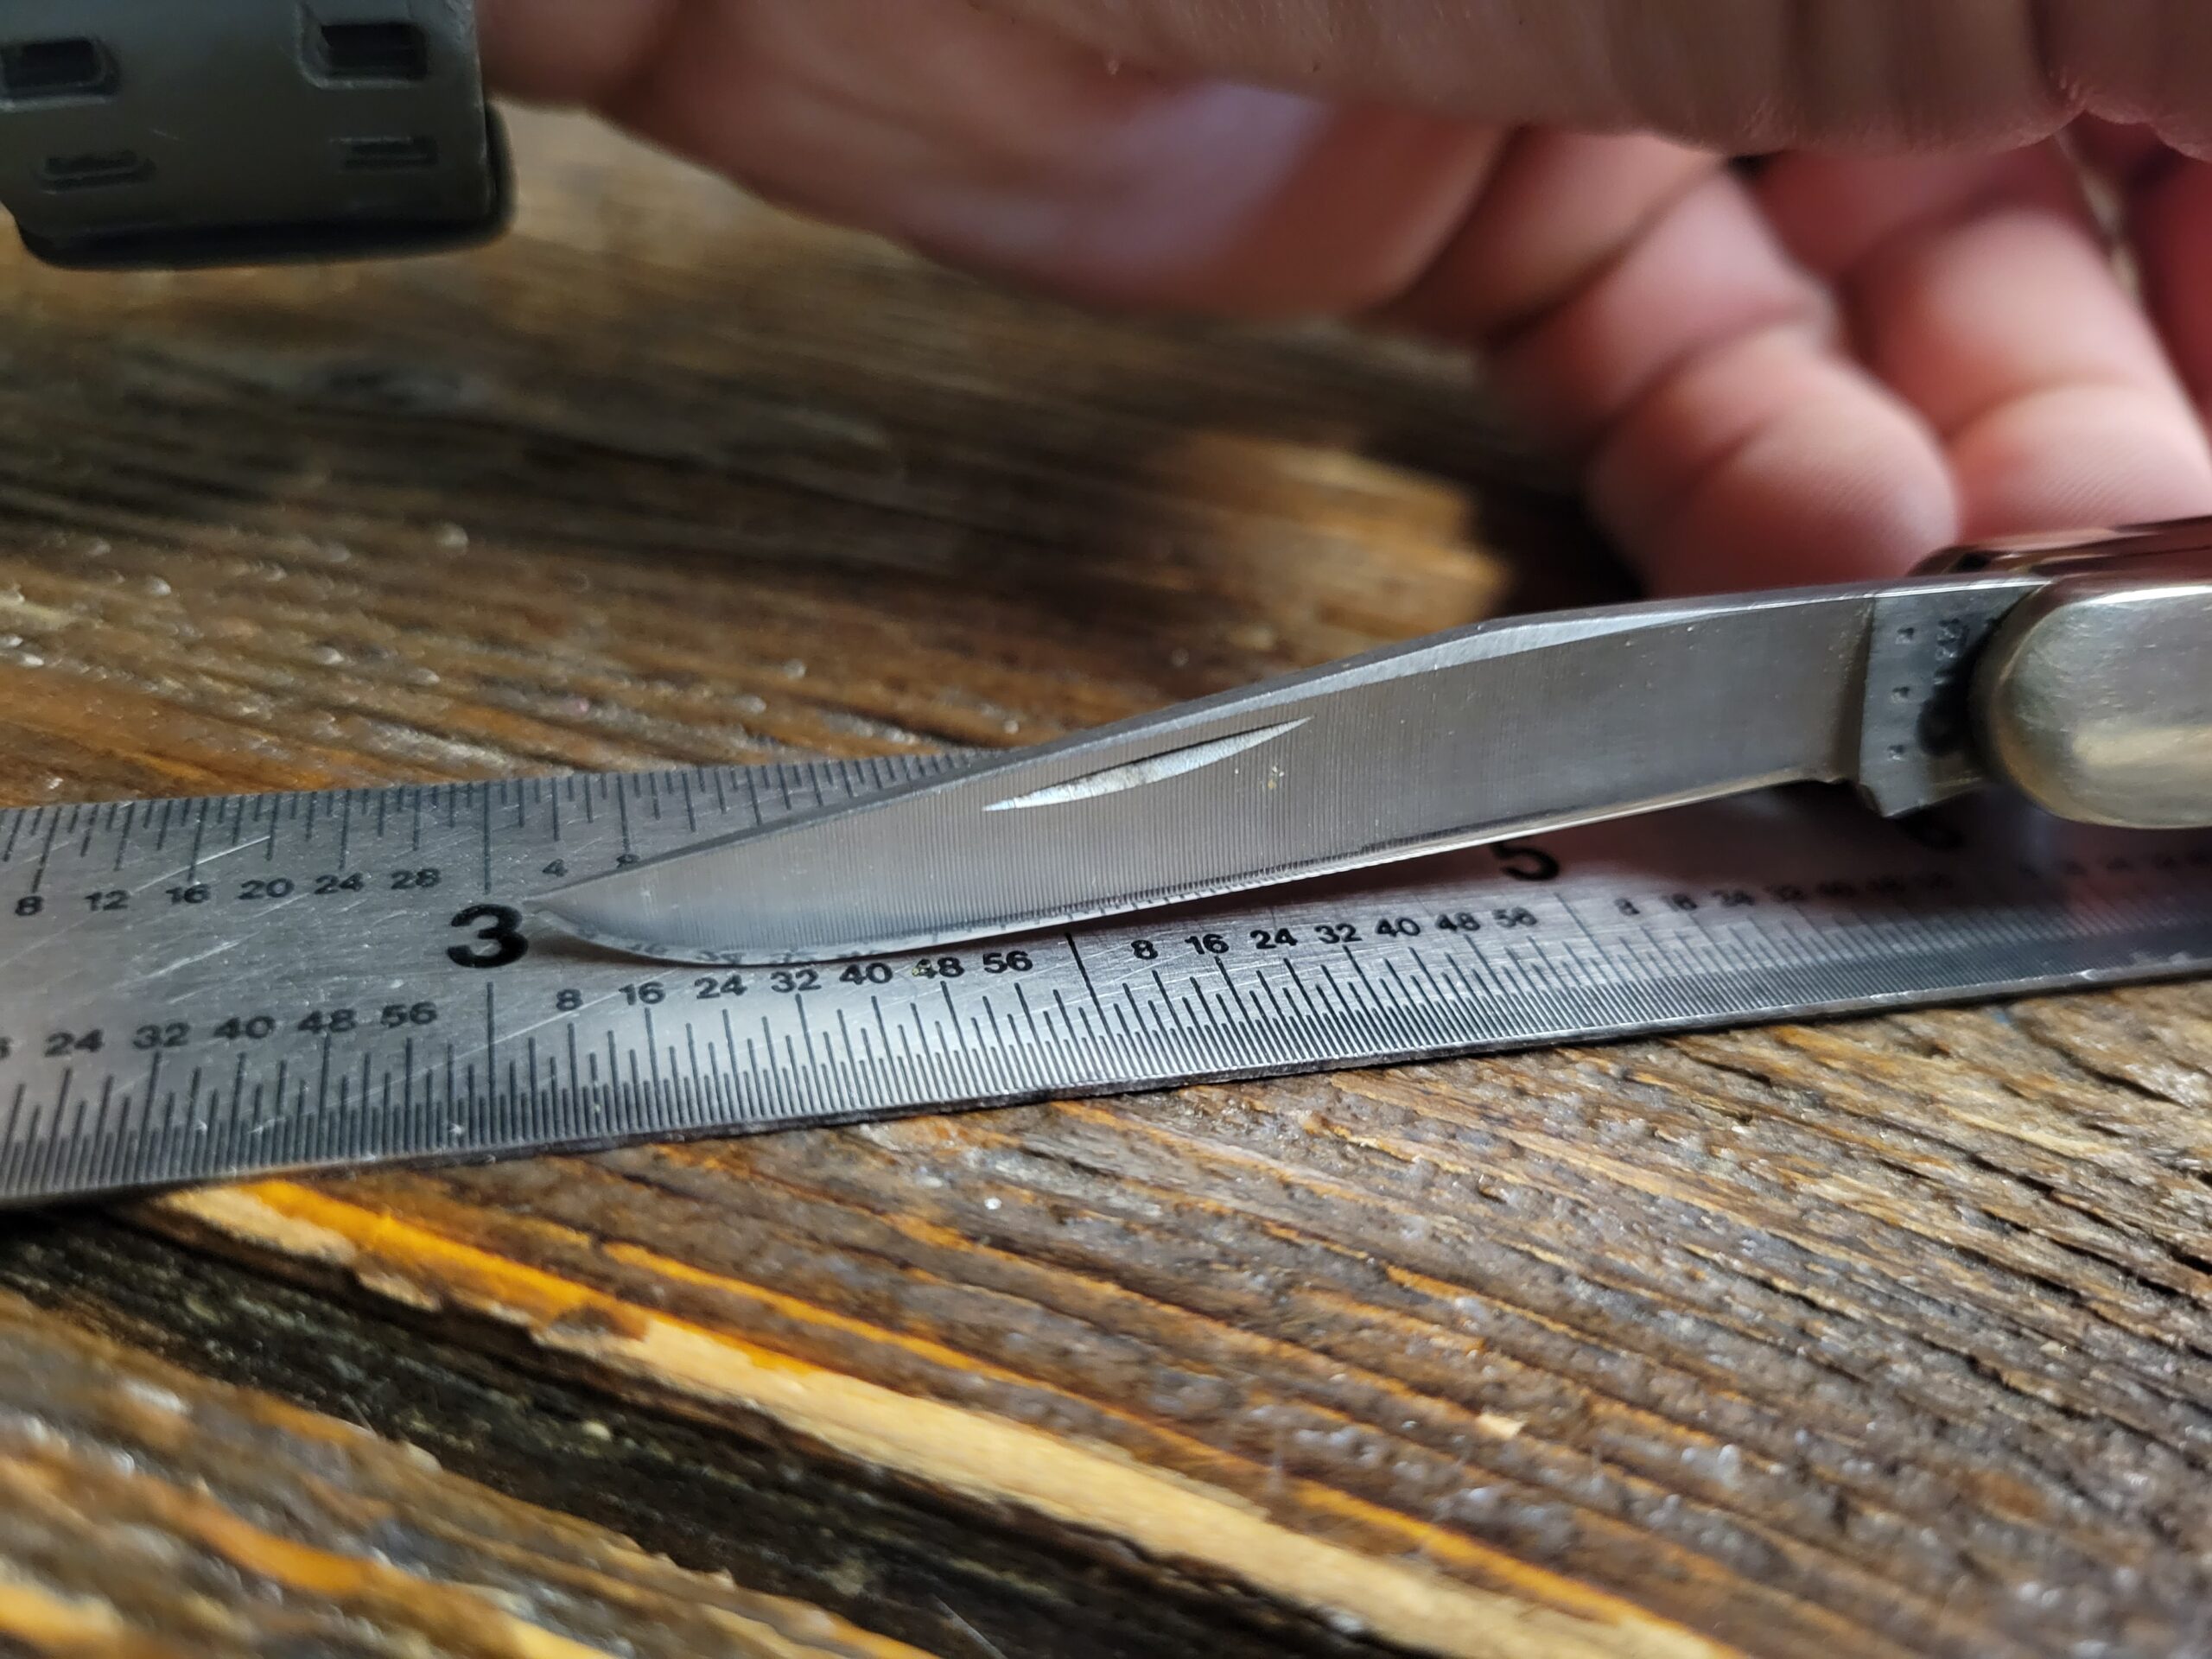 A sharpened pocket knife